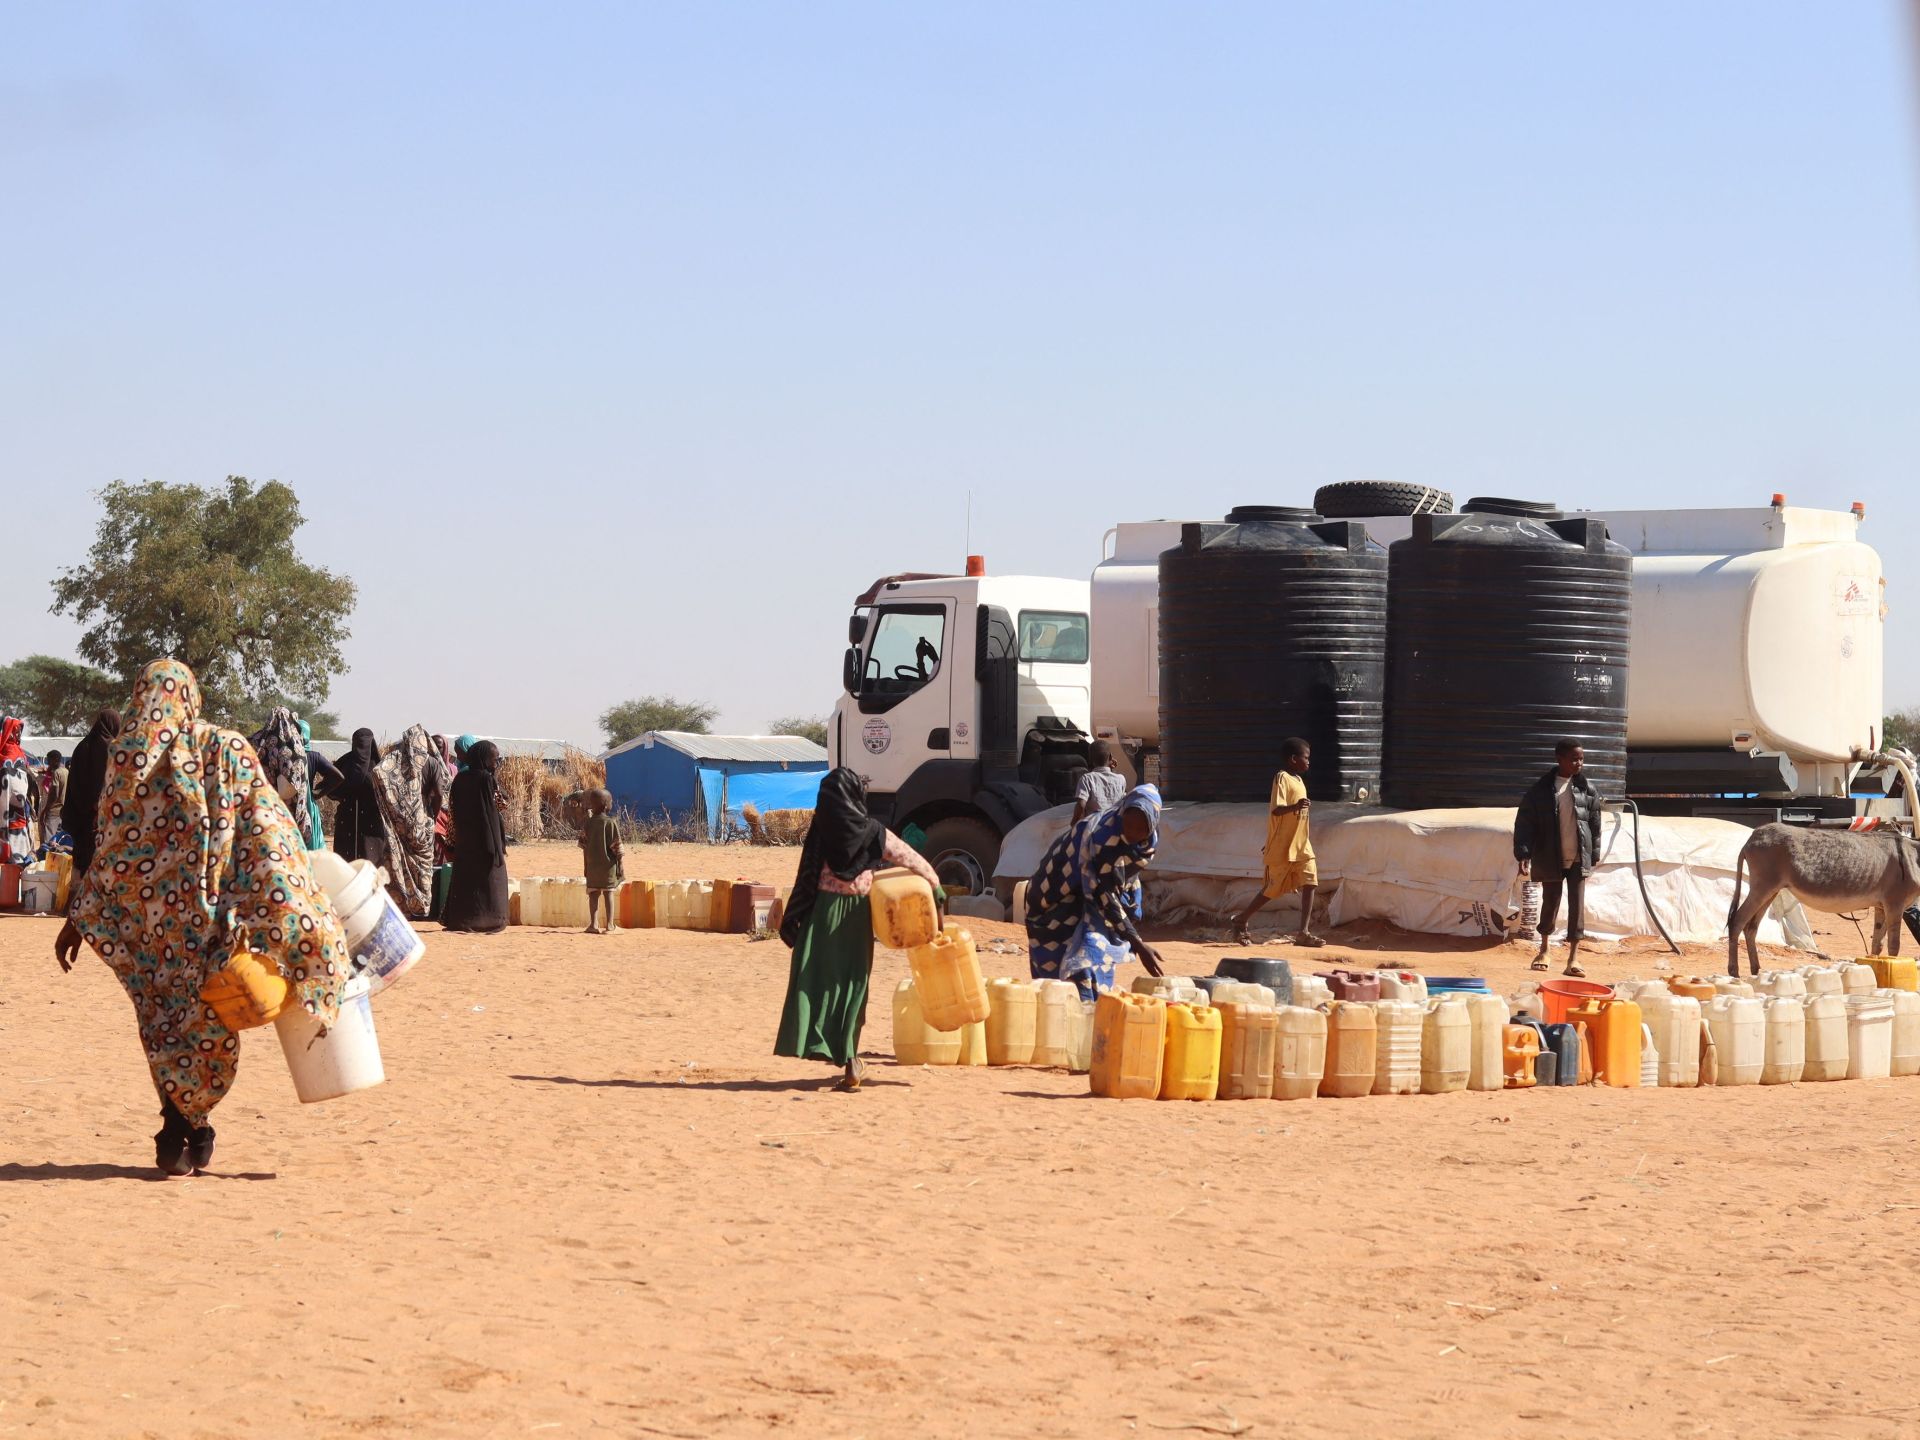 برنامج الأغذية العالمي يوصل مساعدات إلى دارفور لأول مرة منذ أشهر | أخبار – البوكس نيوز